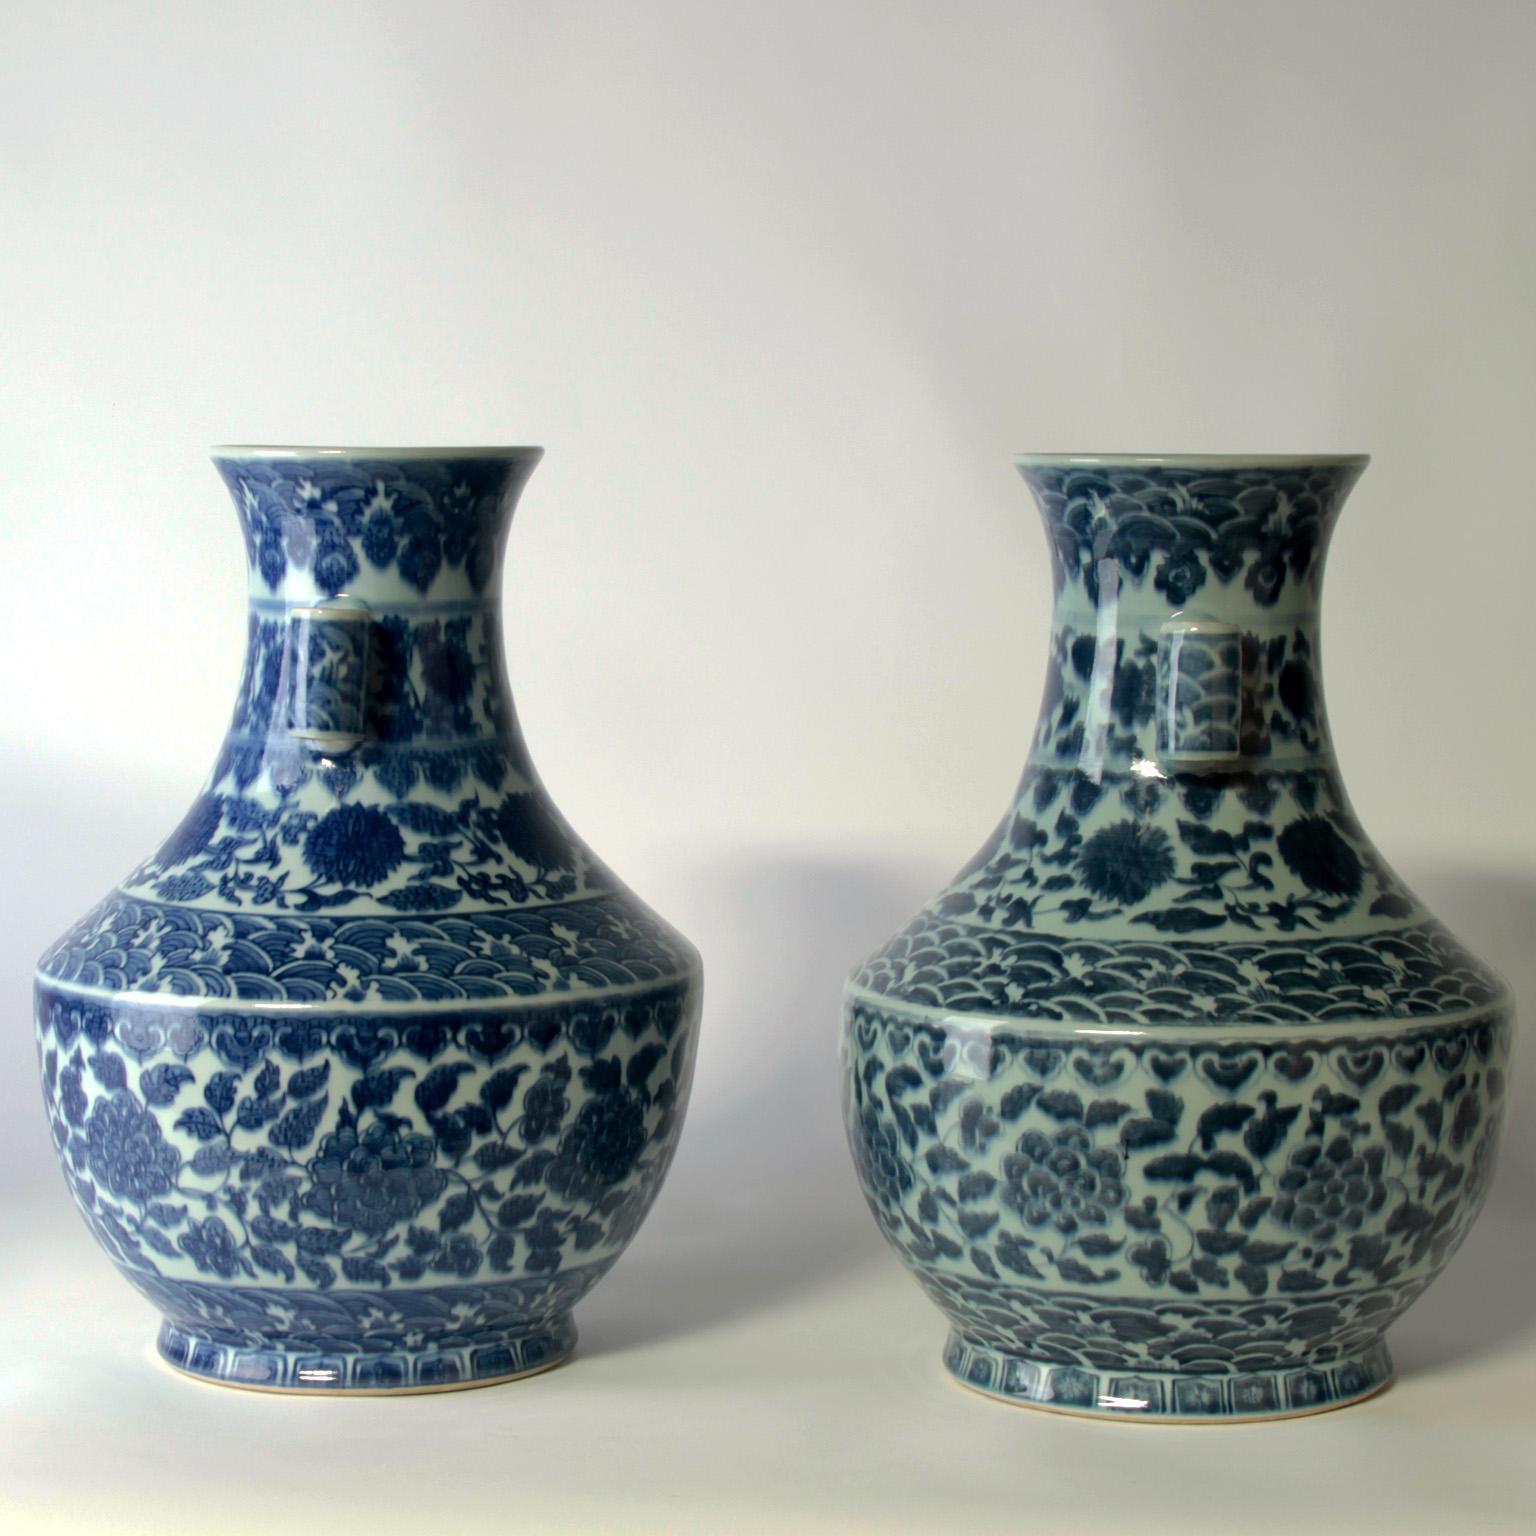 Beautiful 19th century vases.